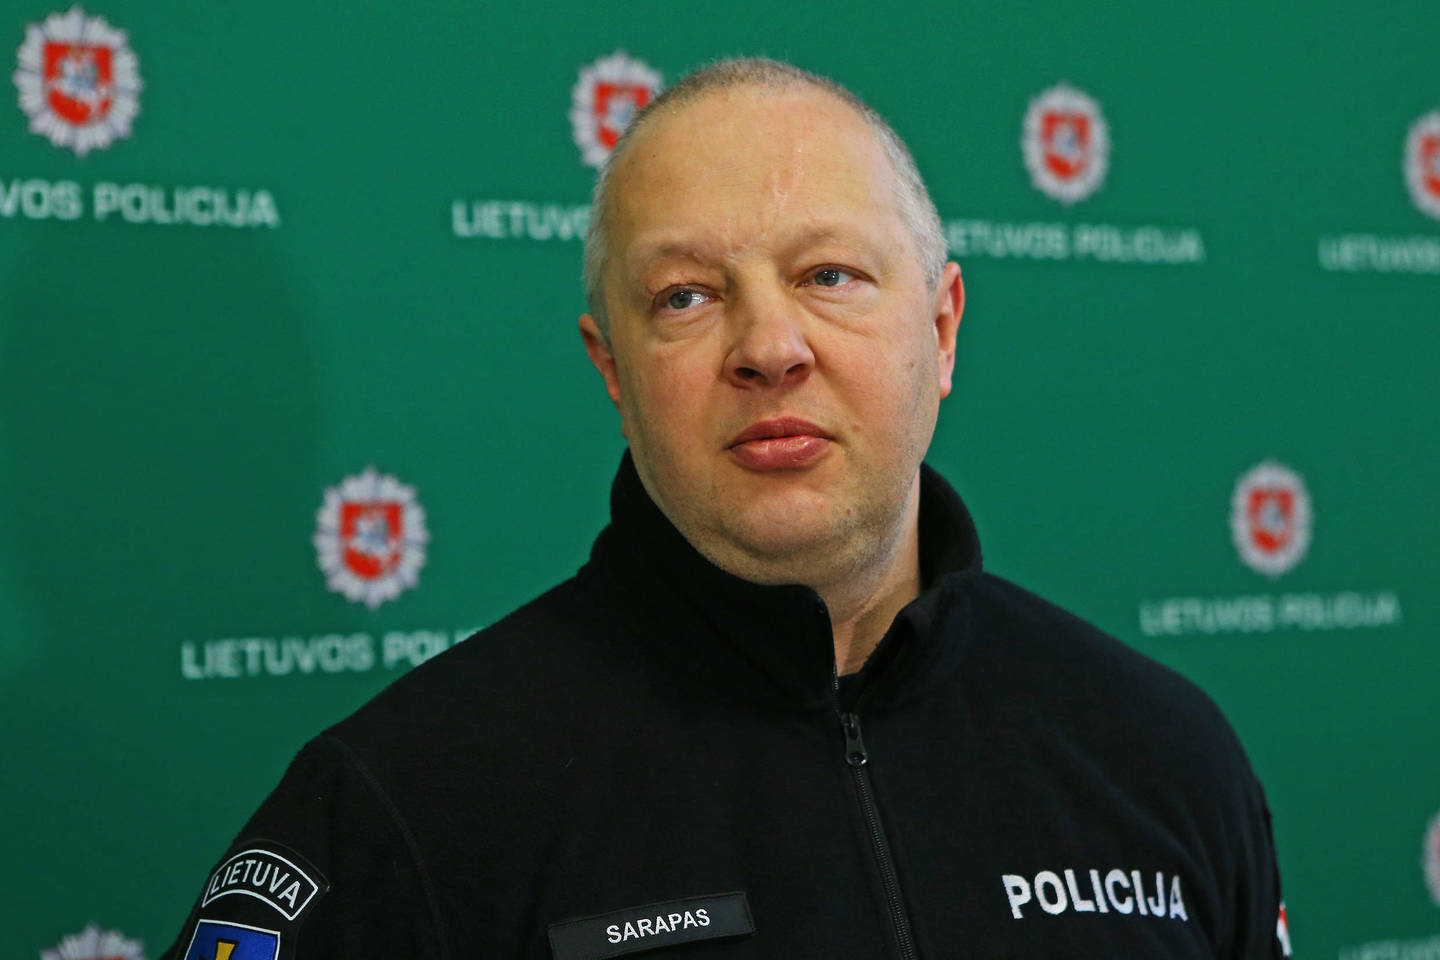 Šiaulių apskrities vyriausiojo policijos komisariato viršininkas R.Sarapas sakė, kad ketvirtas šiaulietis tebesislapsto pareigūnų apsuptame Joniškyje.<br>G.Šiupario nuotr.